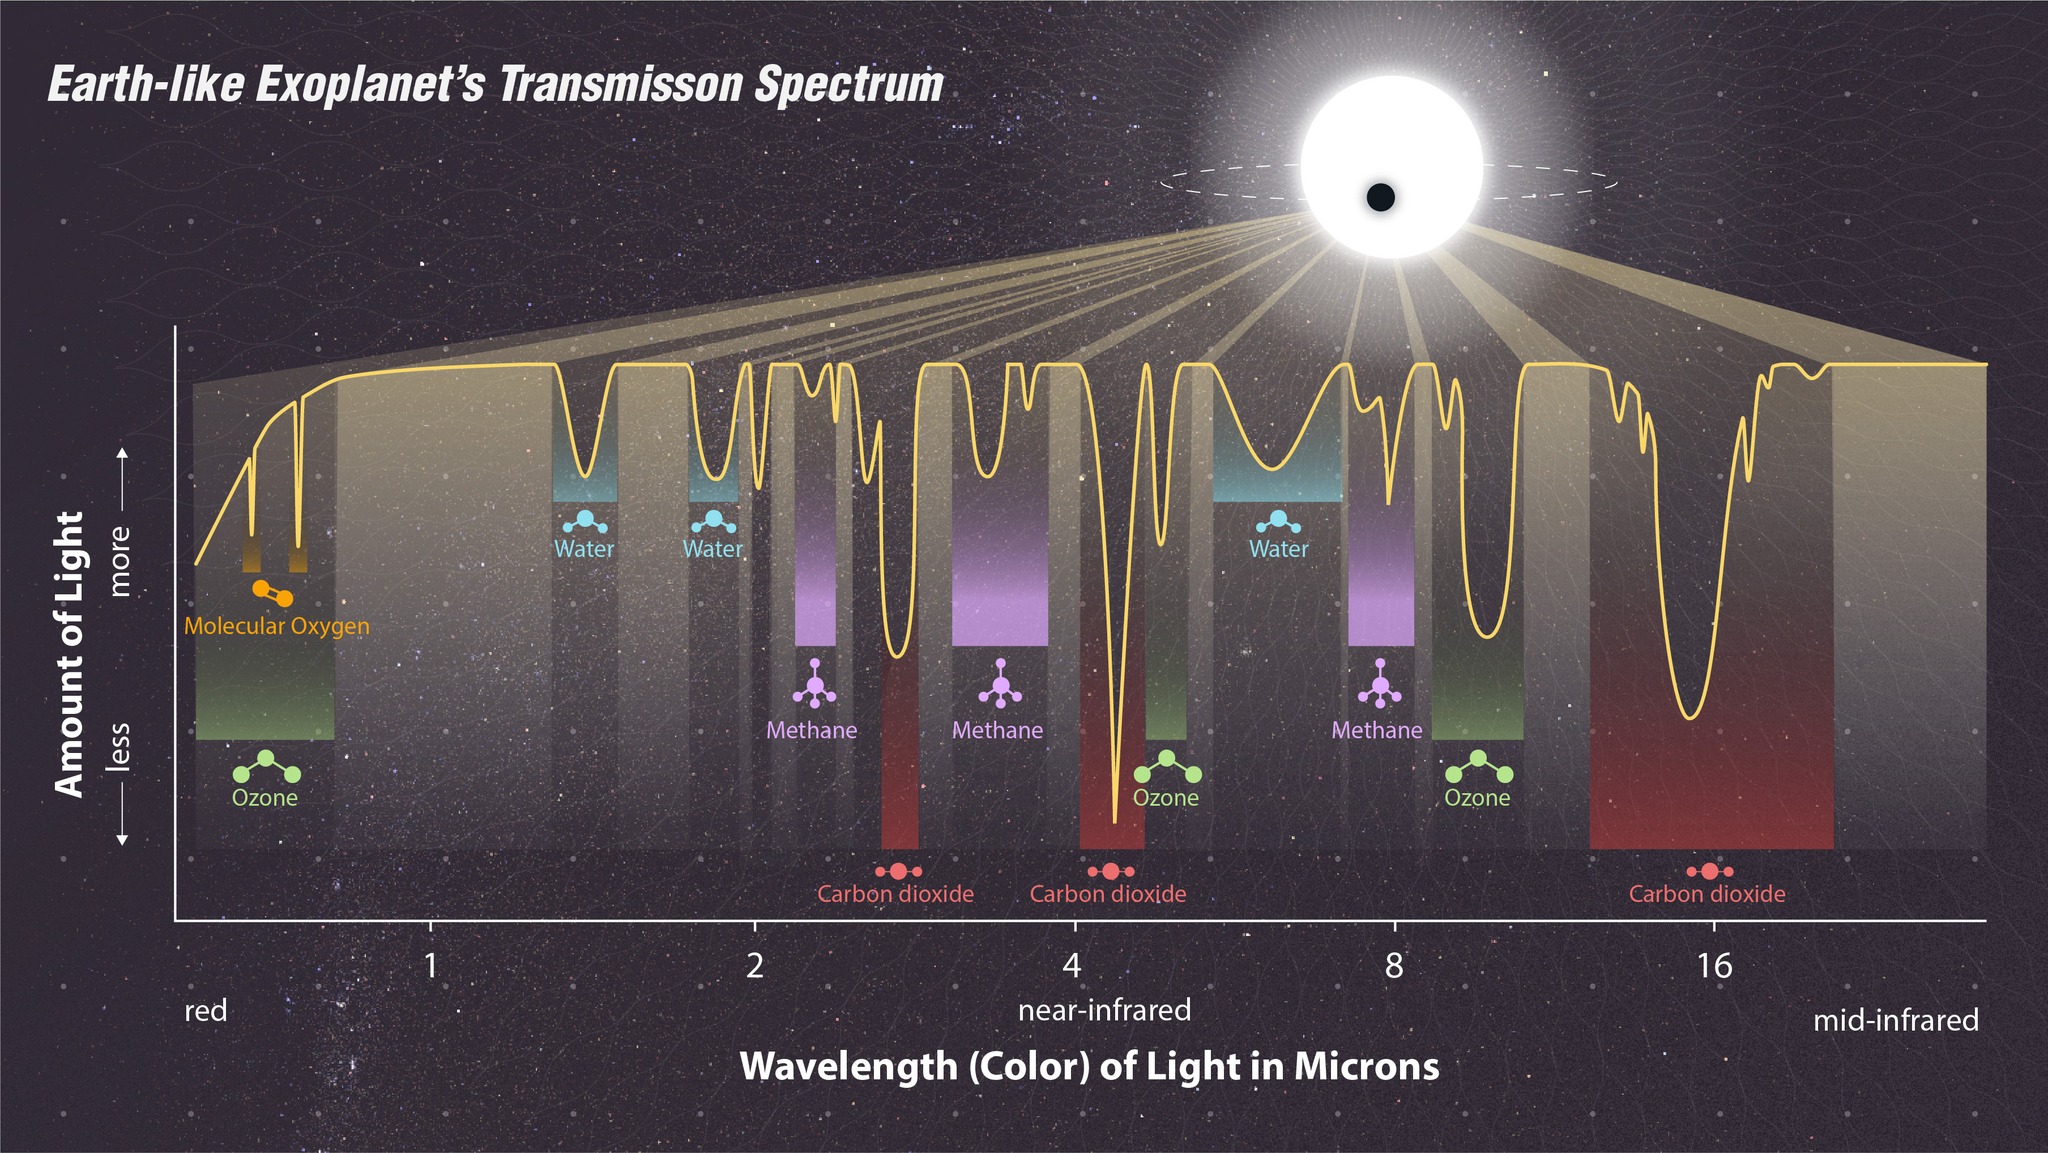 模擬系外行星的透射光譜，顯示出水分子(water)、二氧化碳(carbon dioxide)、甲烷(methane)及臭氧(ozone)吸收光的位置。天文學家透過分析系外行星的透射光譜，找出其大氣層成分。                                          圖片鳴謝 : NASA, ESA, CSA, STScI, Joseph Olmsted (STScI)